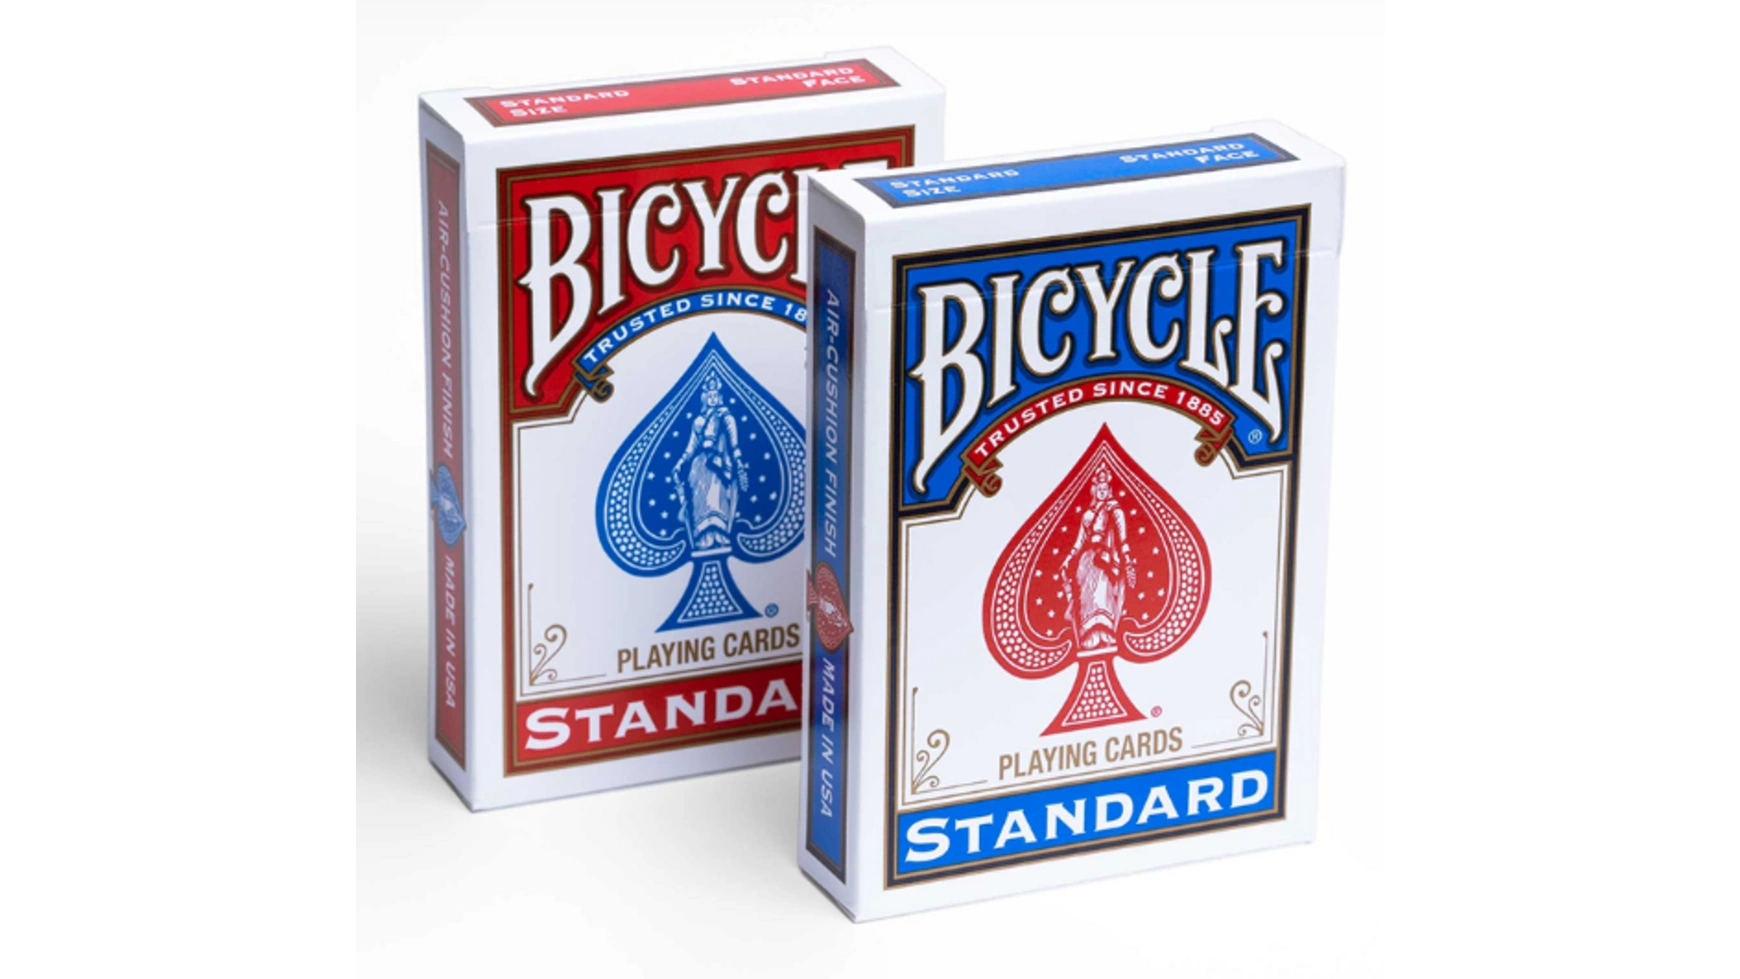 Bicycle – стандартный – красный и синий, игральные карты uspcc игральные карты bicycle pro poker peek uspcc сша 54 карты